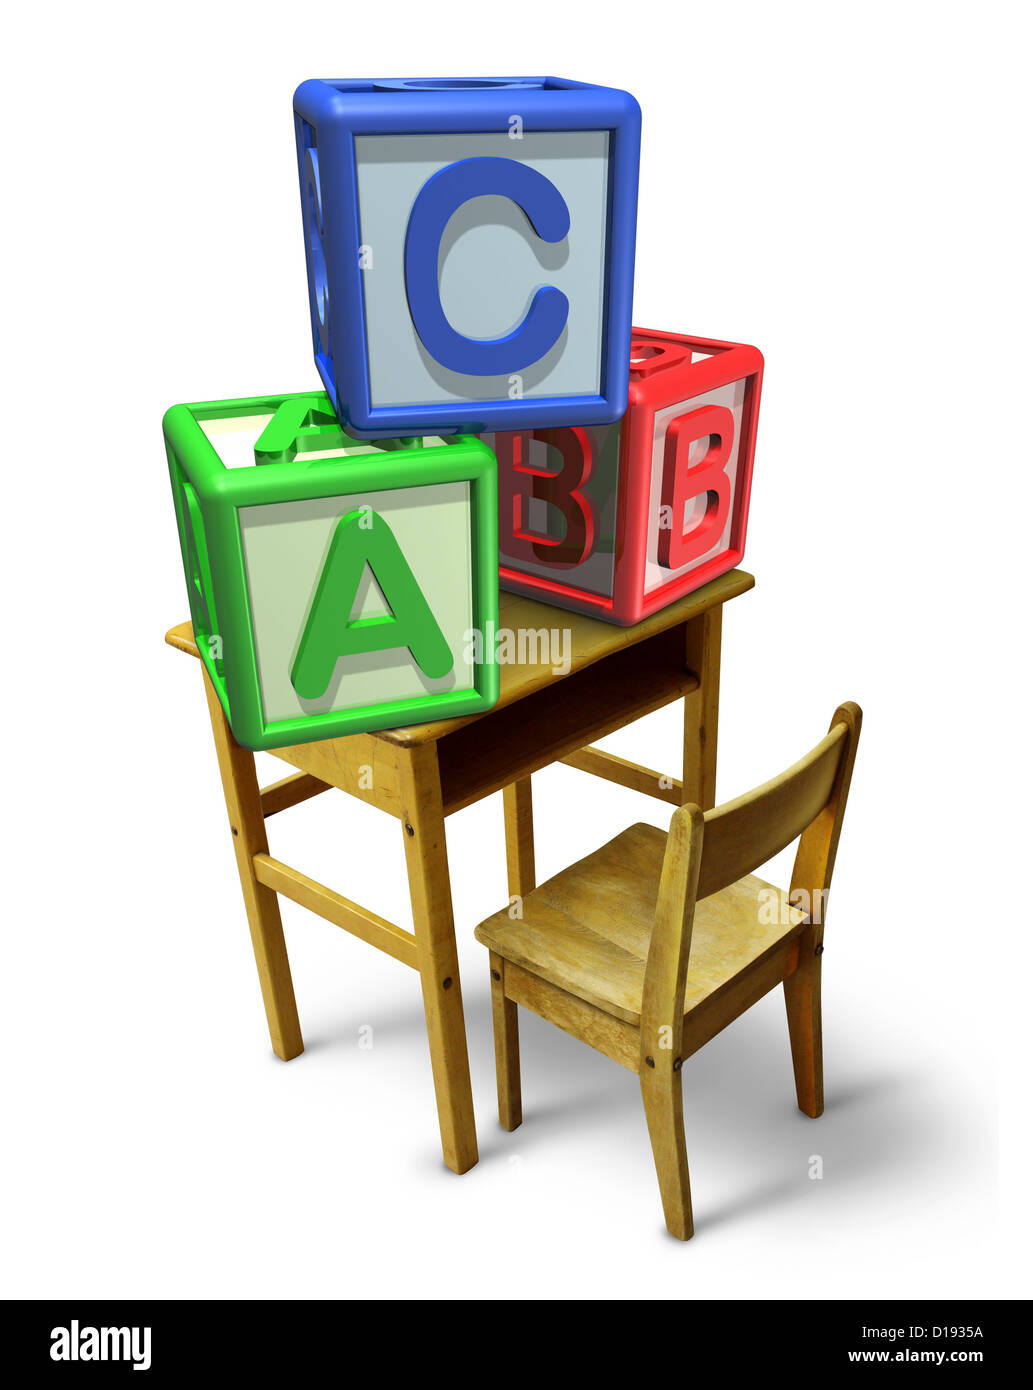 Grundschulen und frühkindliche Bildung mit der Schulbank und grundlegenden Buchstaben-Blöcke mit b und c für Kinderbetreuung Stockfoto